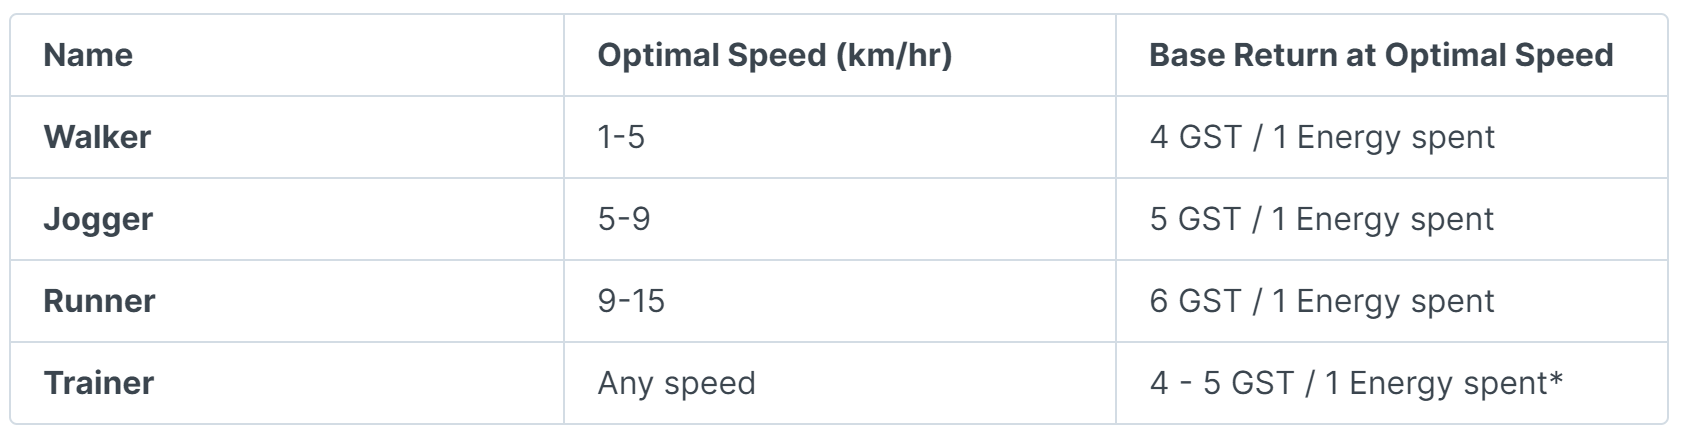 左列からタイプ、適正速度、適正速度で動いたら貰えるGSTの量（ステータスによるが、ベースはこれ）